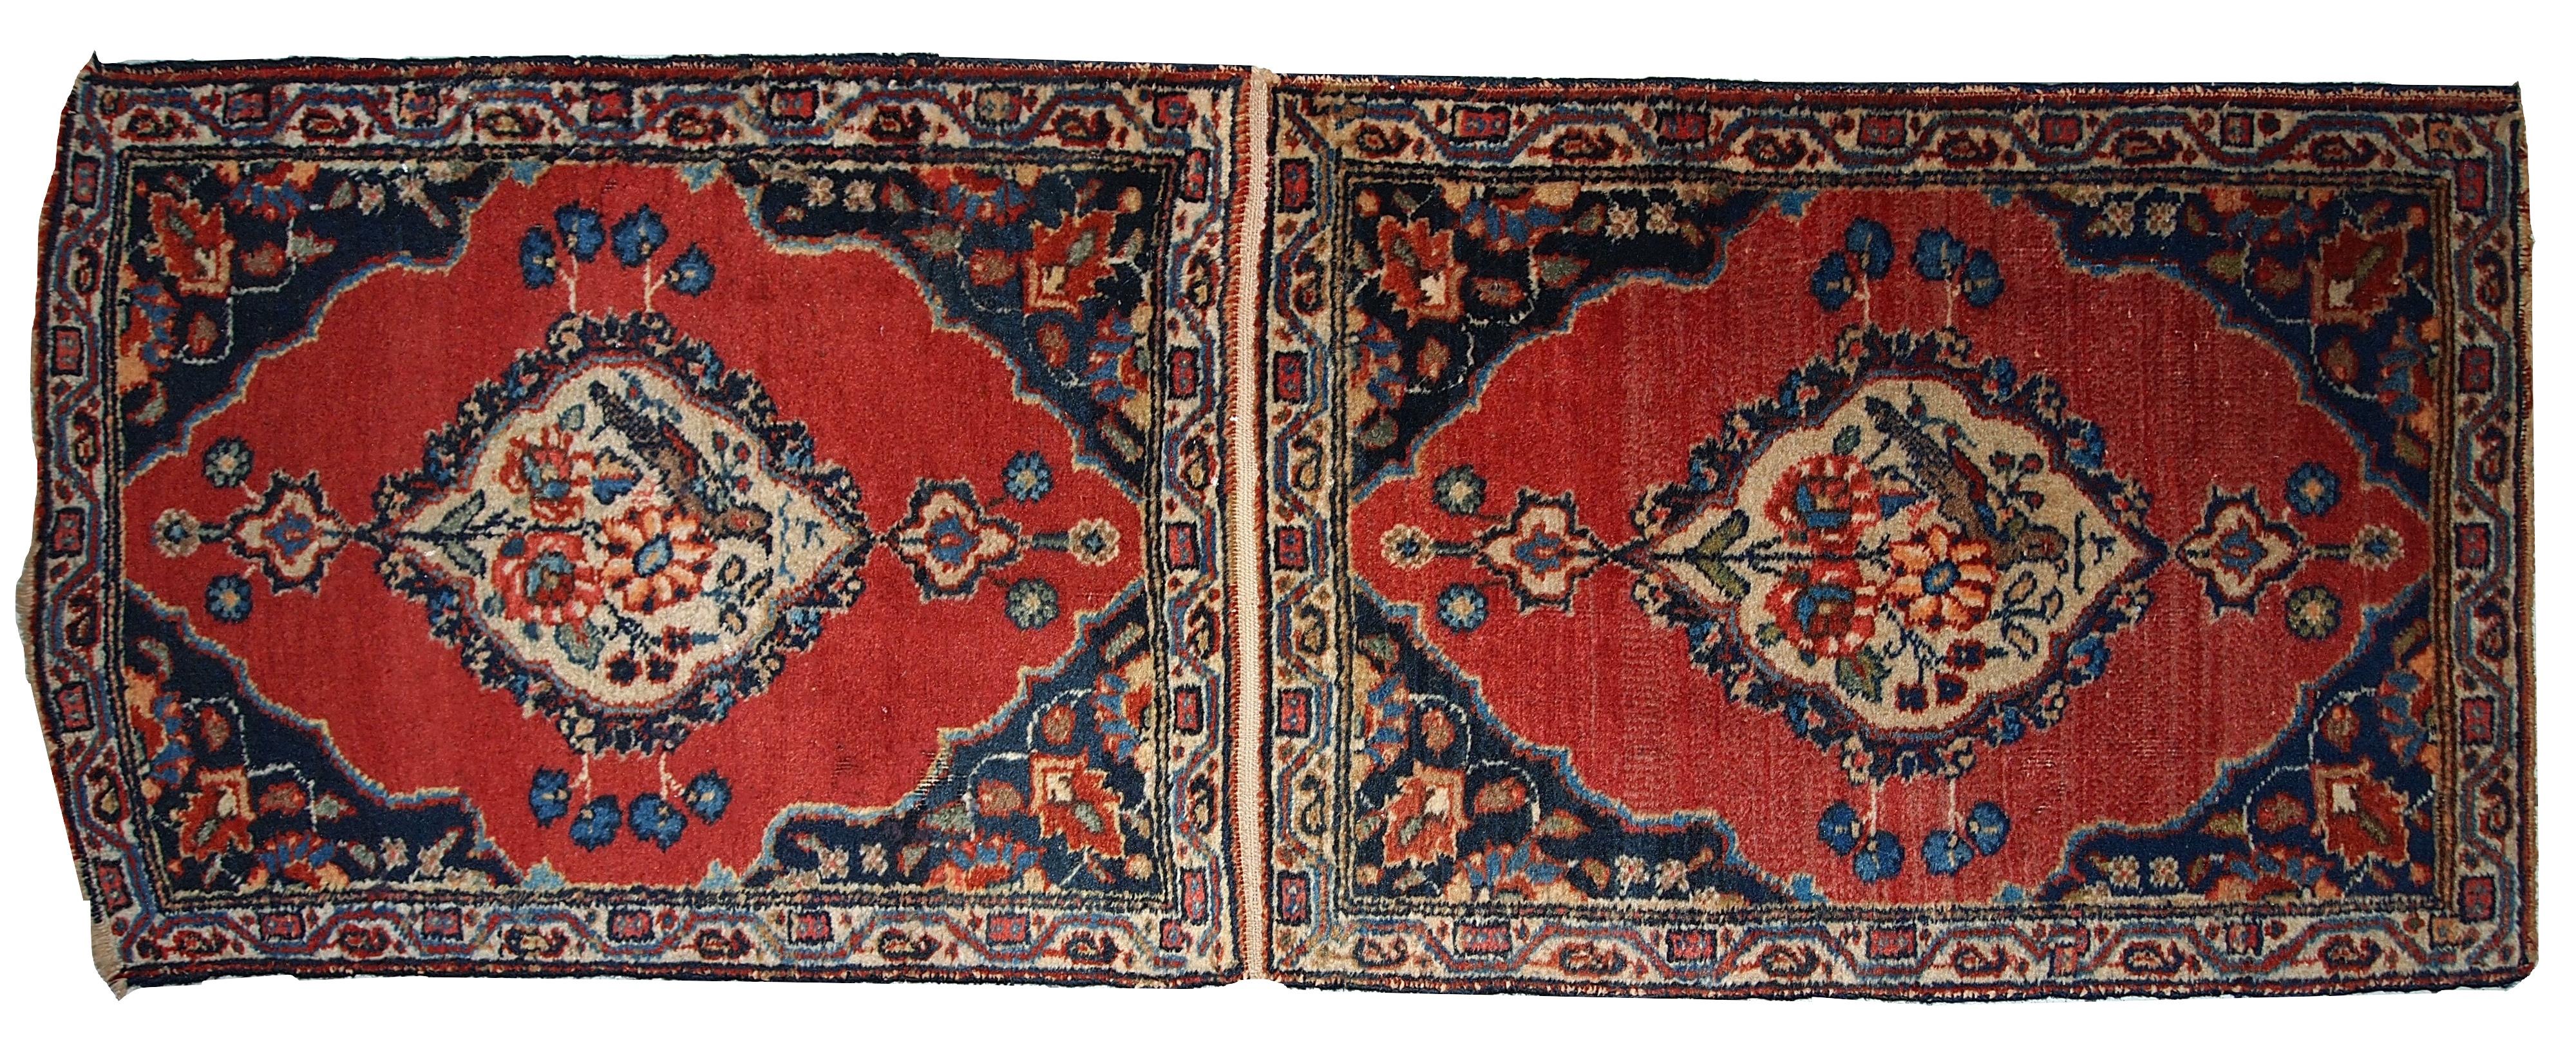 Antike Täbris-Doppelmatte in gutem Originalzustand, einer der Teppiche hat etwas niedrigen Flor. Das Design ist traditionell mit dekorativen Vögeln in der Mitte. Maße: 1.7' x 4,7' (52 cm x 143 cm).